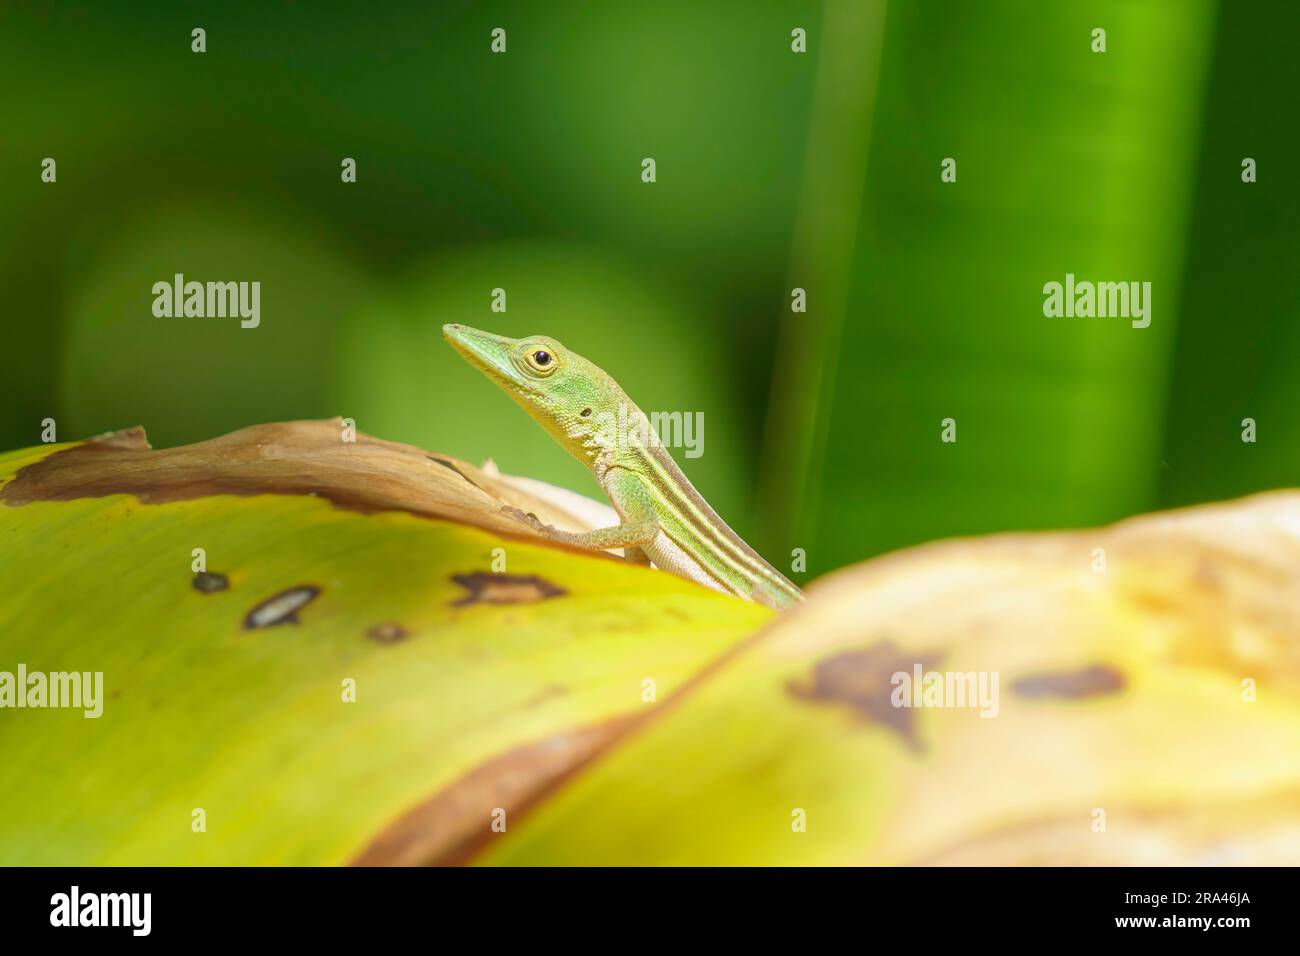 Die hispaniolische grüne Anole blickt aus einem grünen Versteck heraus, wobei das Auge direkt auf die Kamera blickt. Selektiver Fokus. Stockfoto